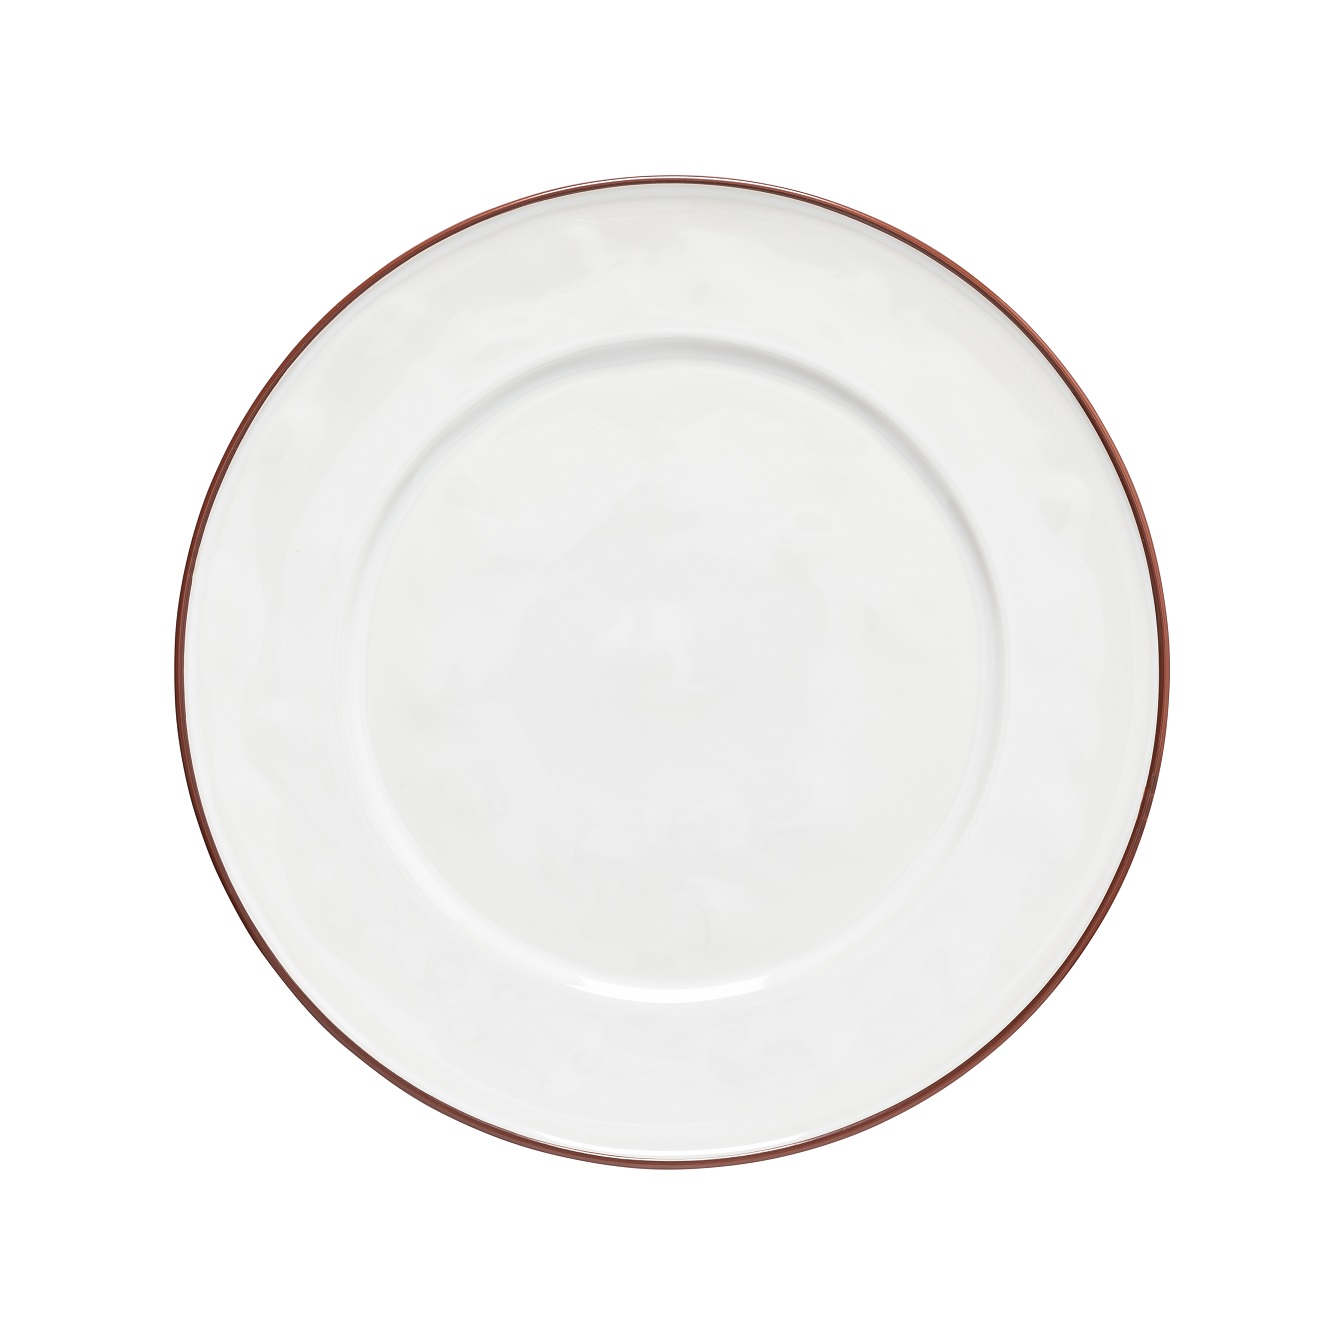 Beja White/red Charger Plate/platter 33cm Gift